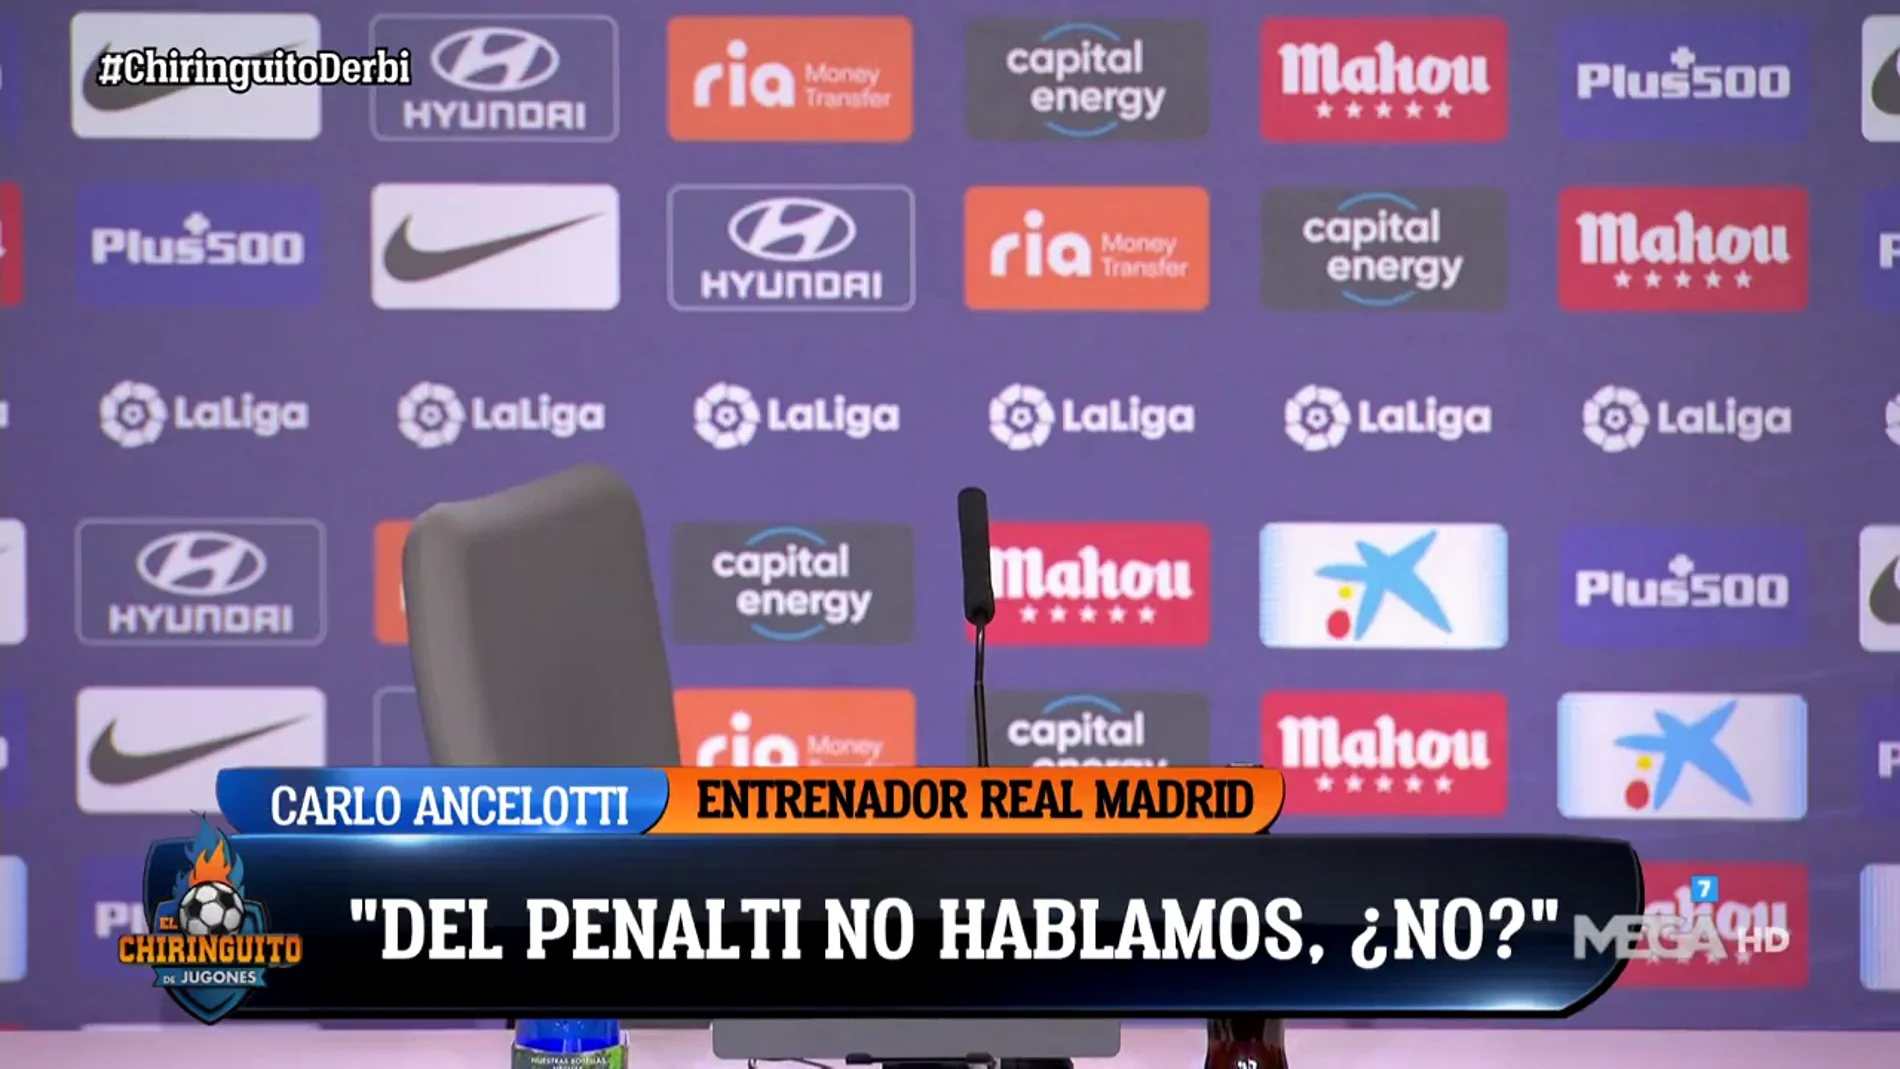 Ancelotti: "Del penalti no hablamos, ¿no?"